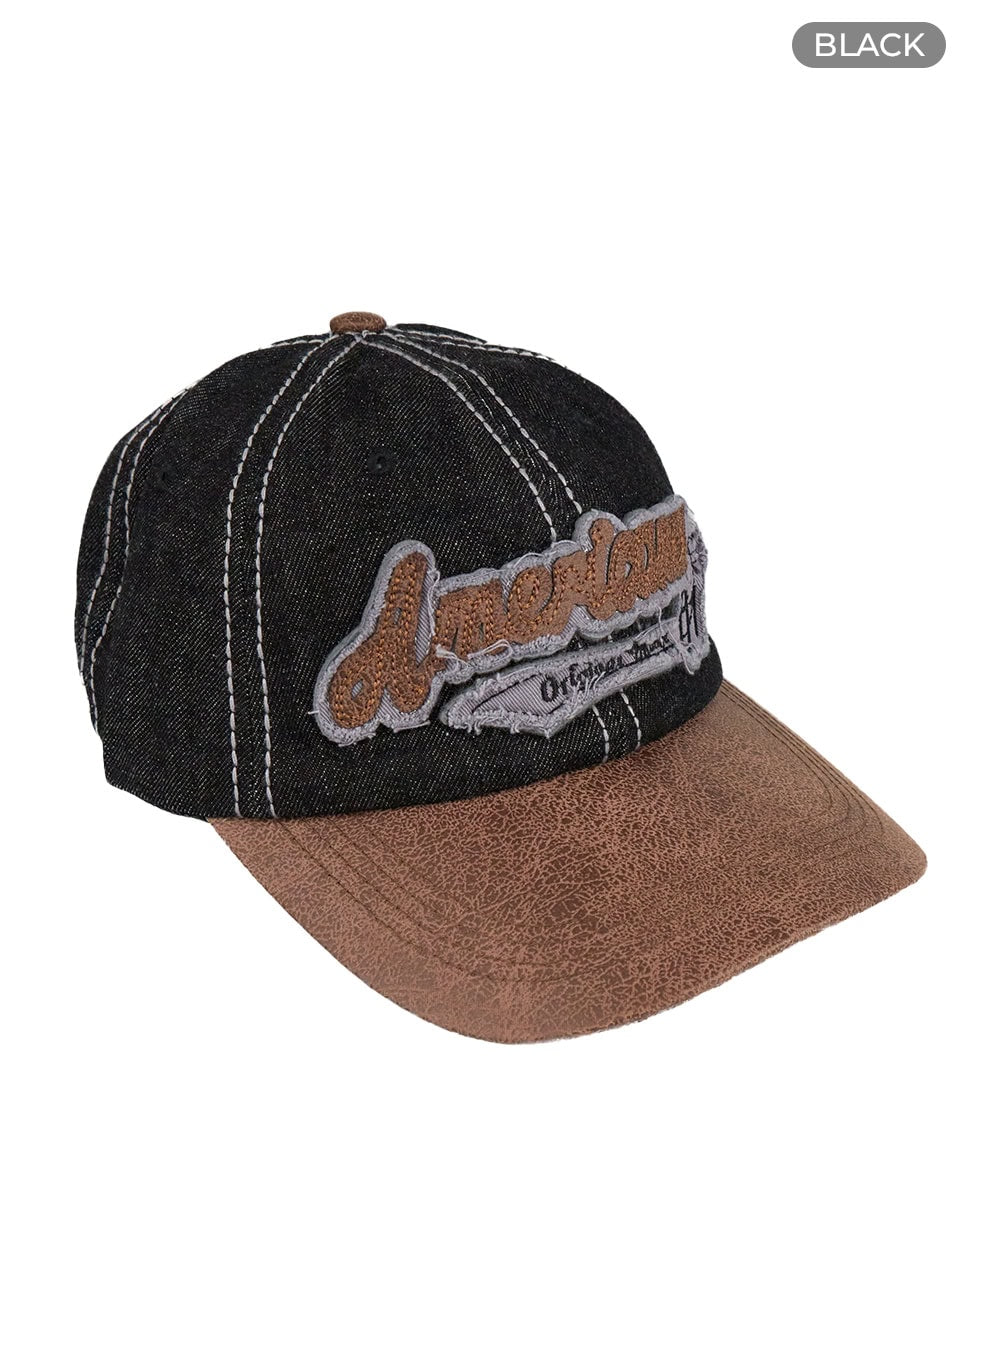 stitched-vintage-cap-cu420